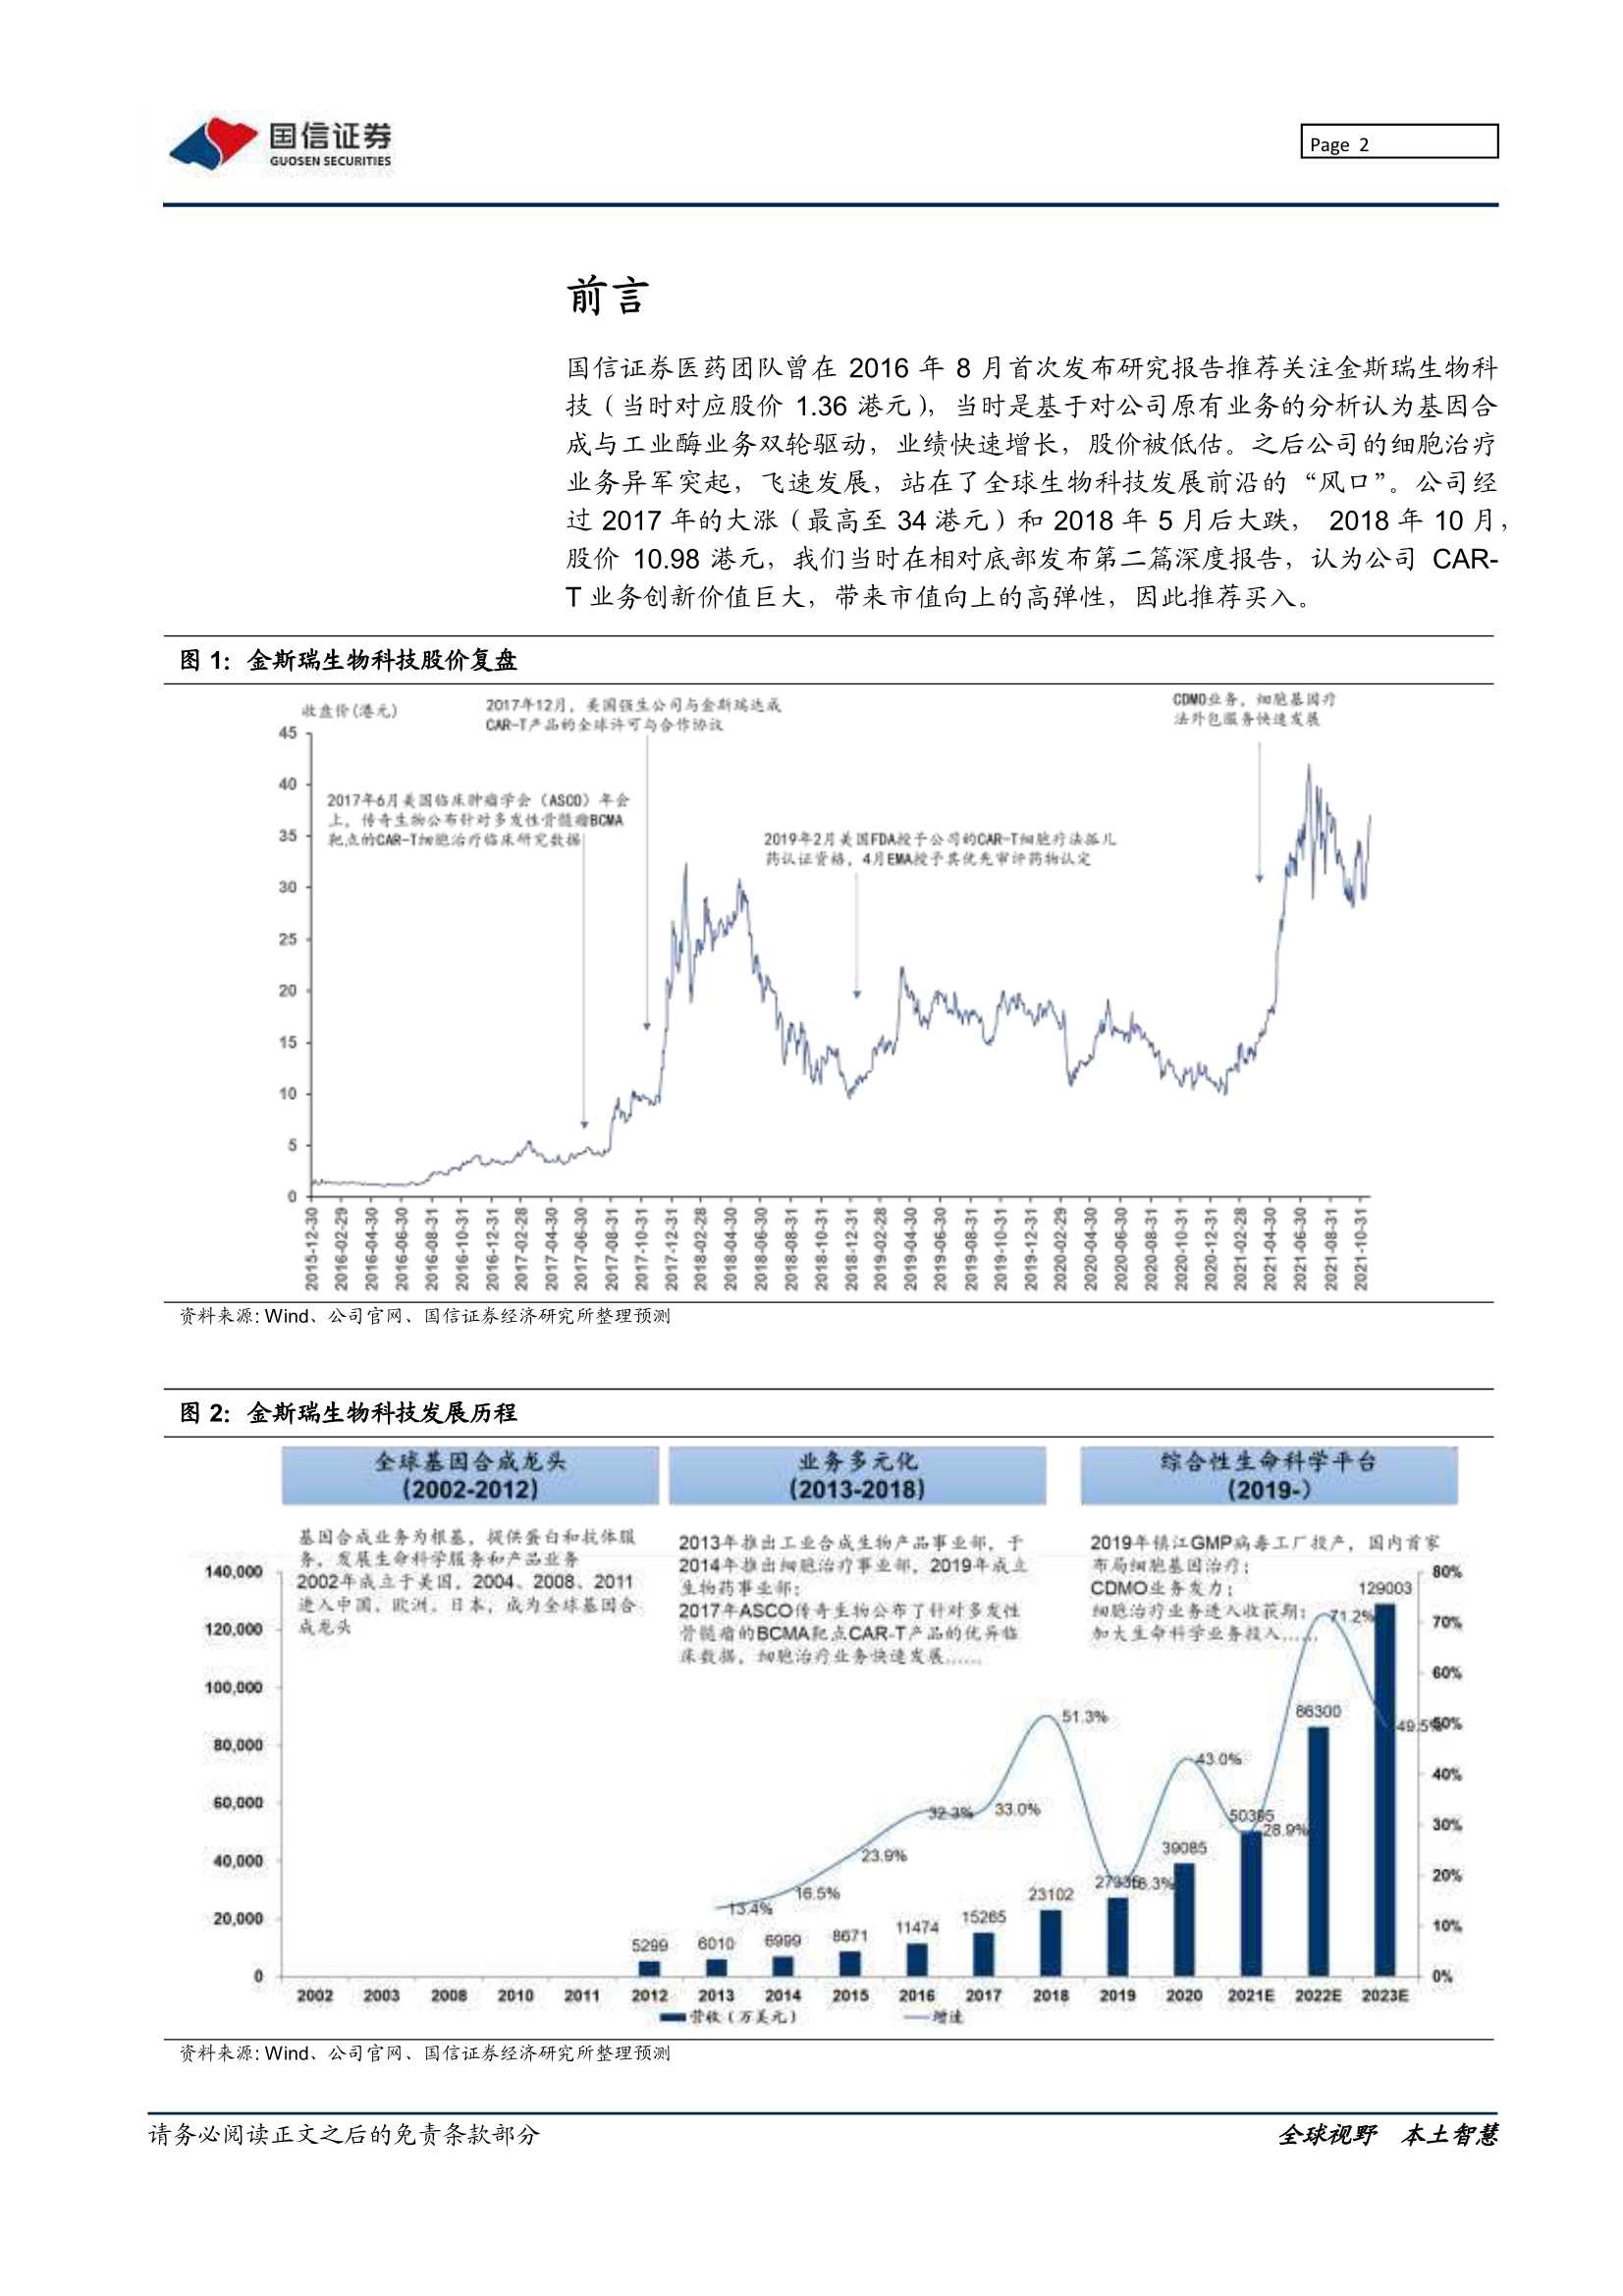 国信证券-金斯瑞生物科技-1548.HK-创新平台，全面开花-20211123-76页